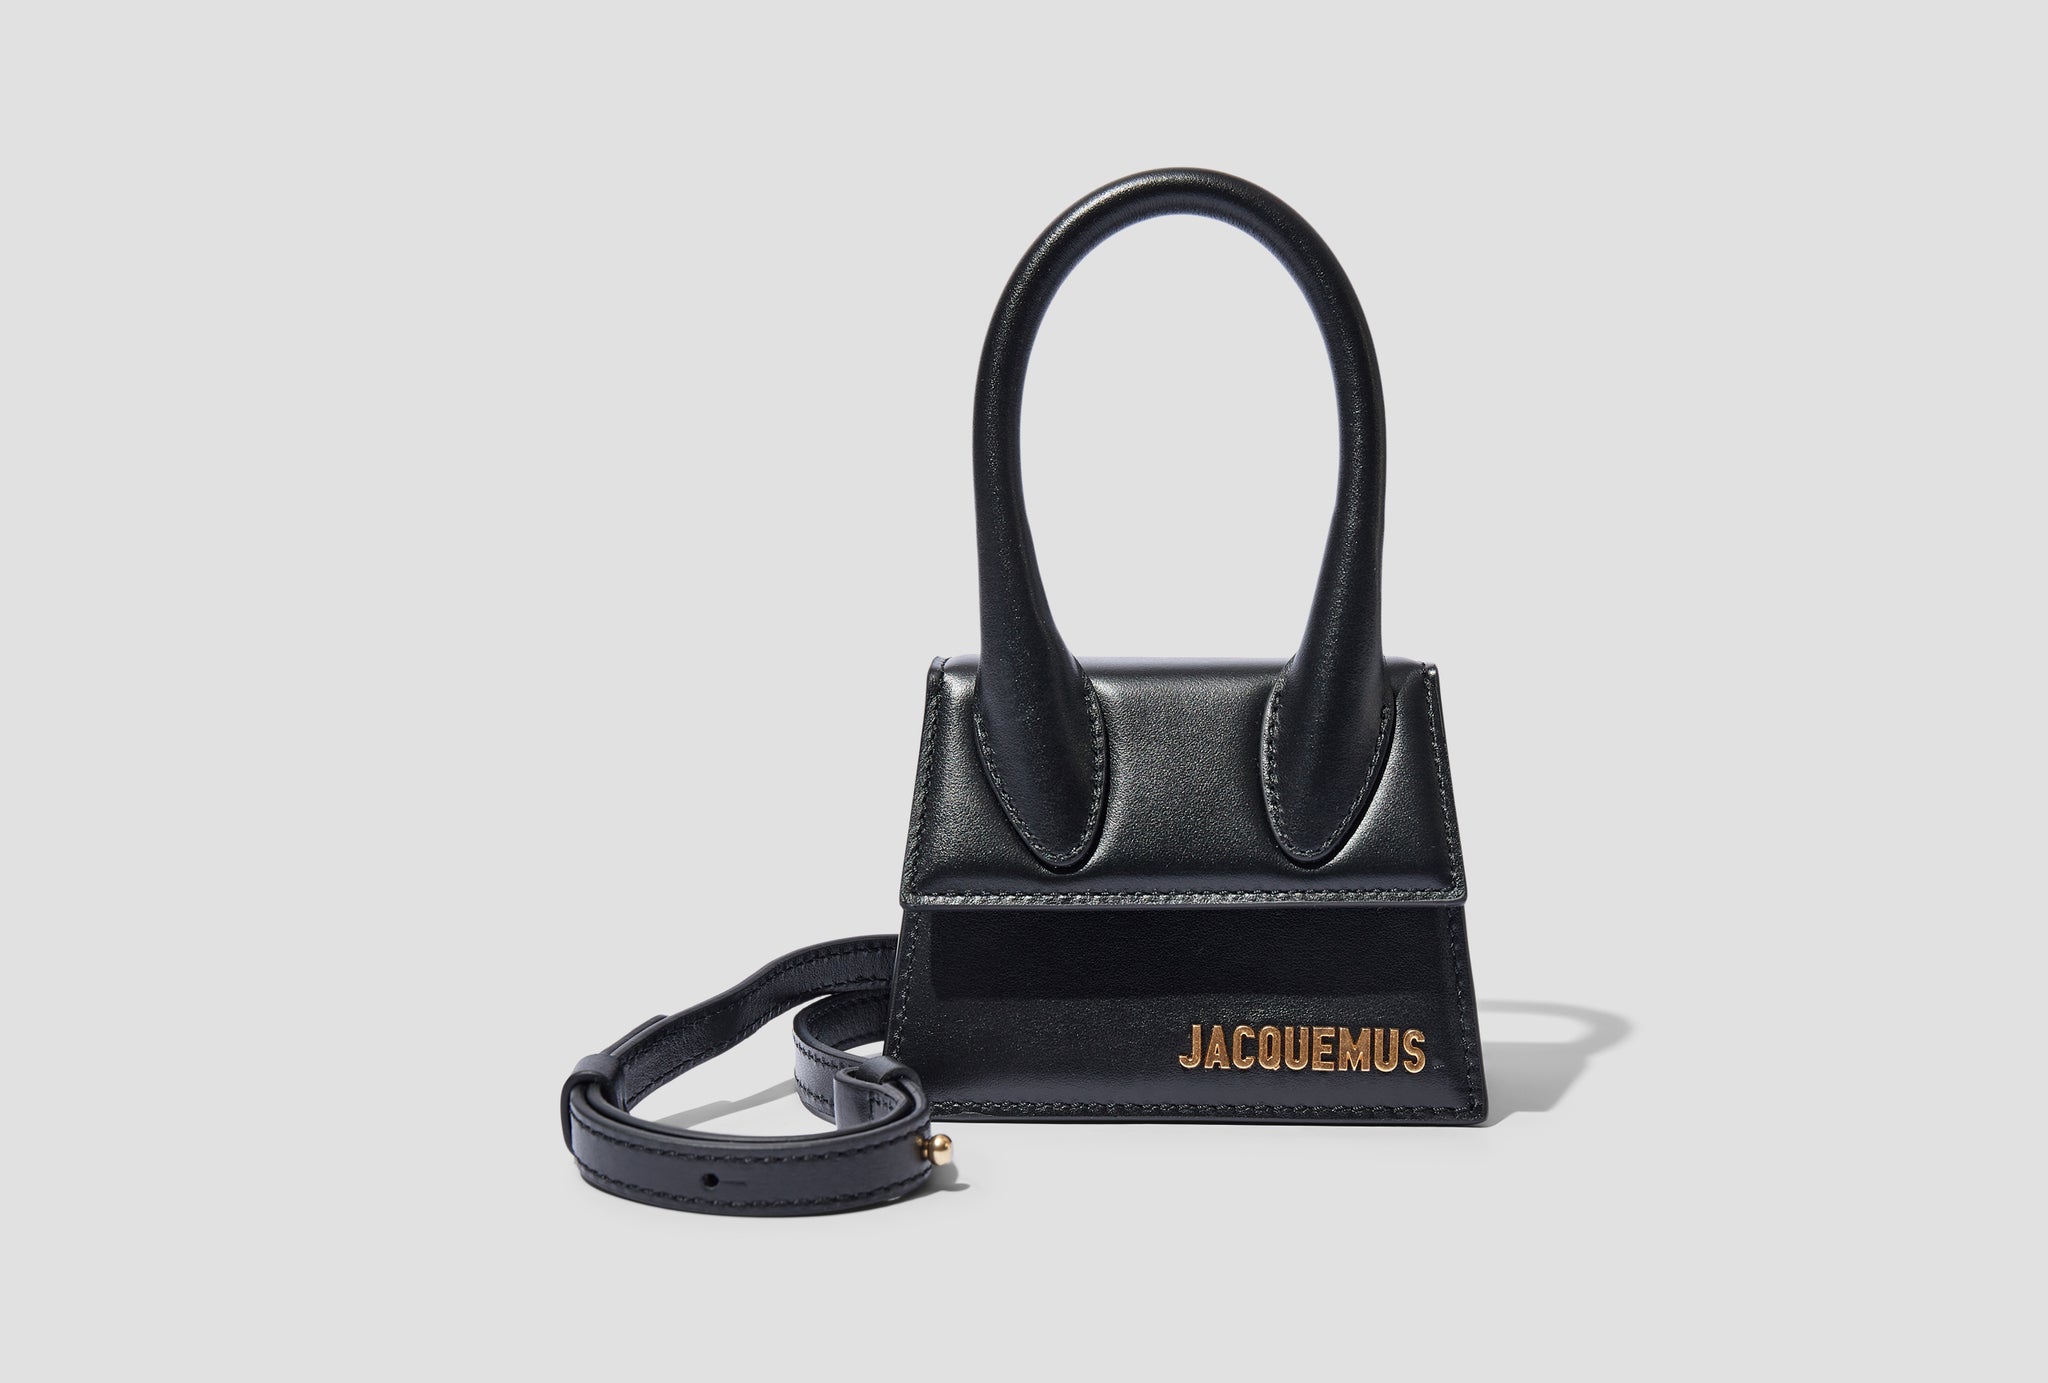 Jacquemus Le Chiquito Mini Bag Dark Navy